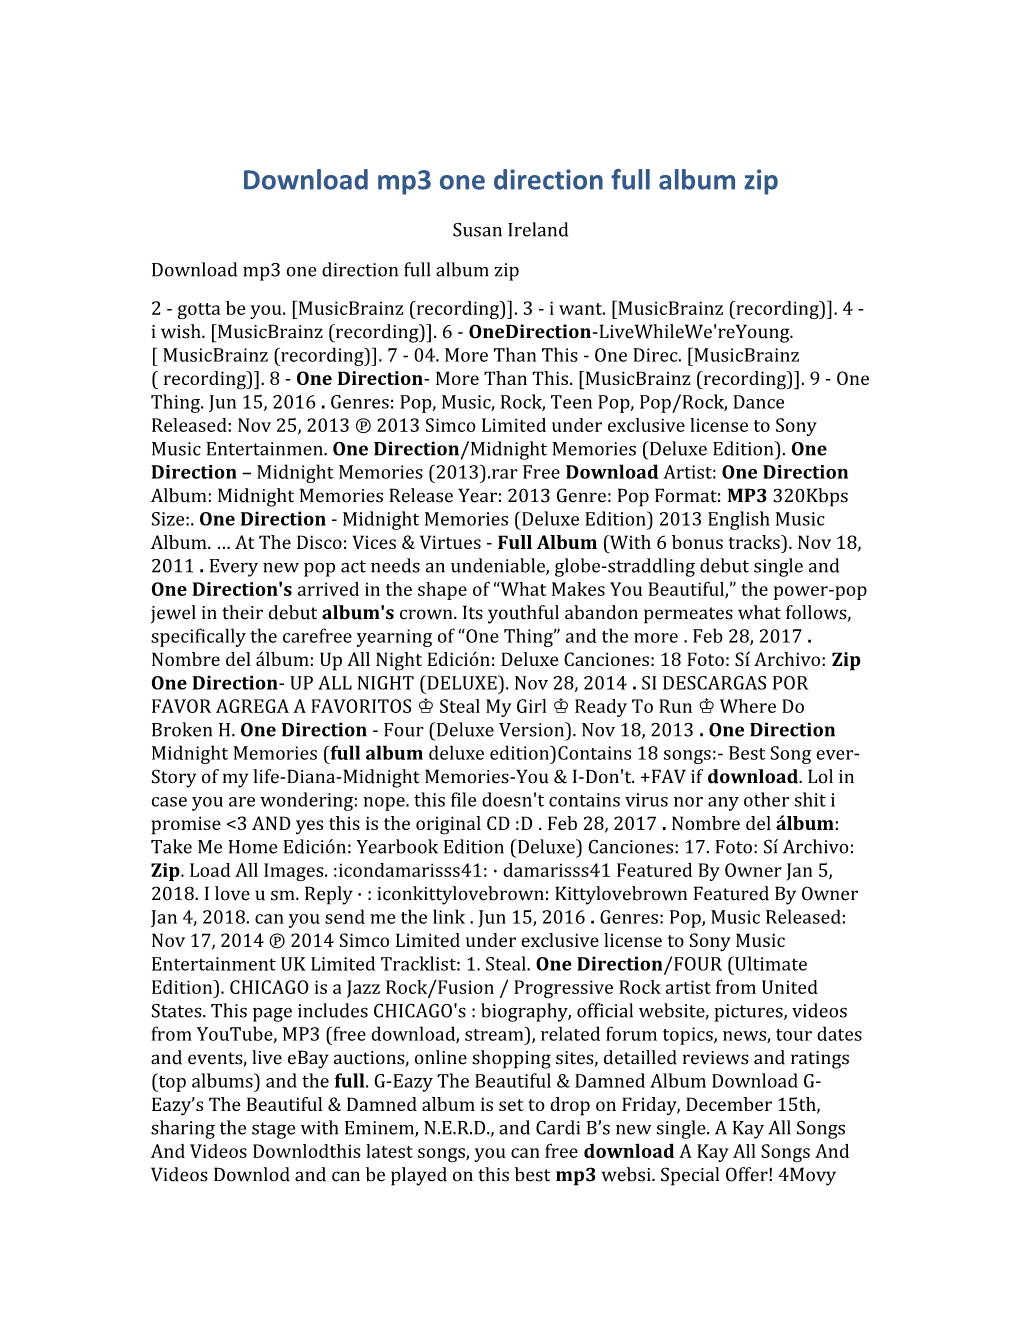 Download Mp3 One Direction Full Album Zip